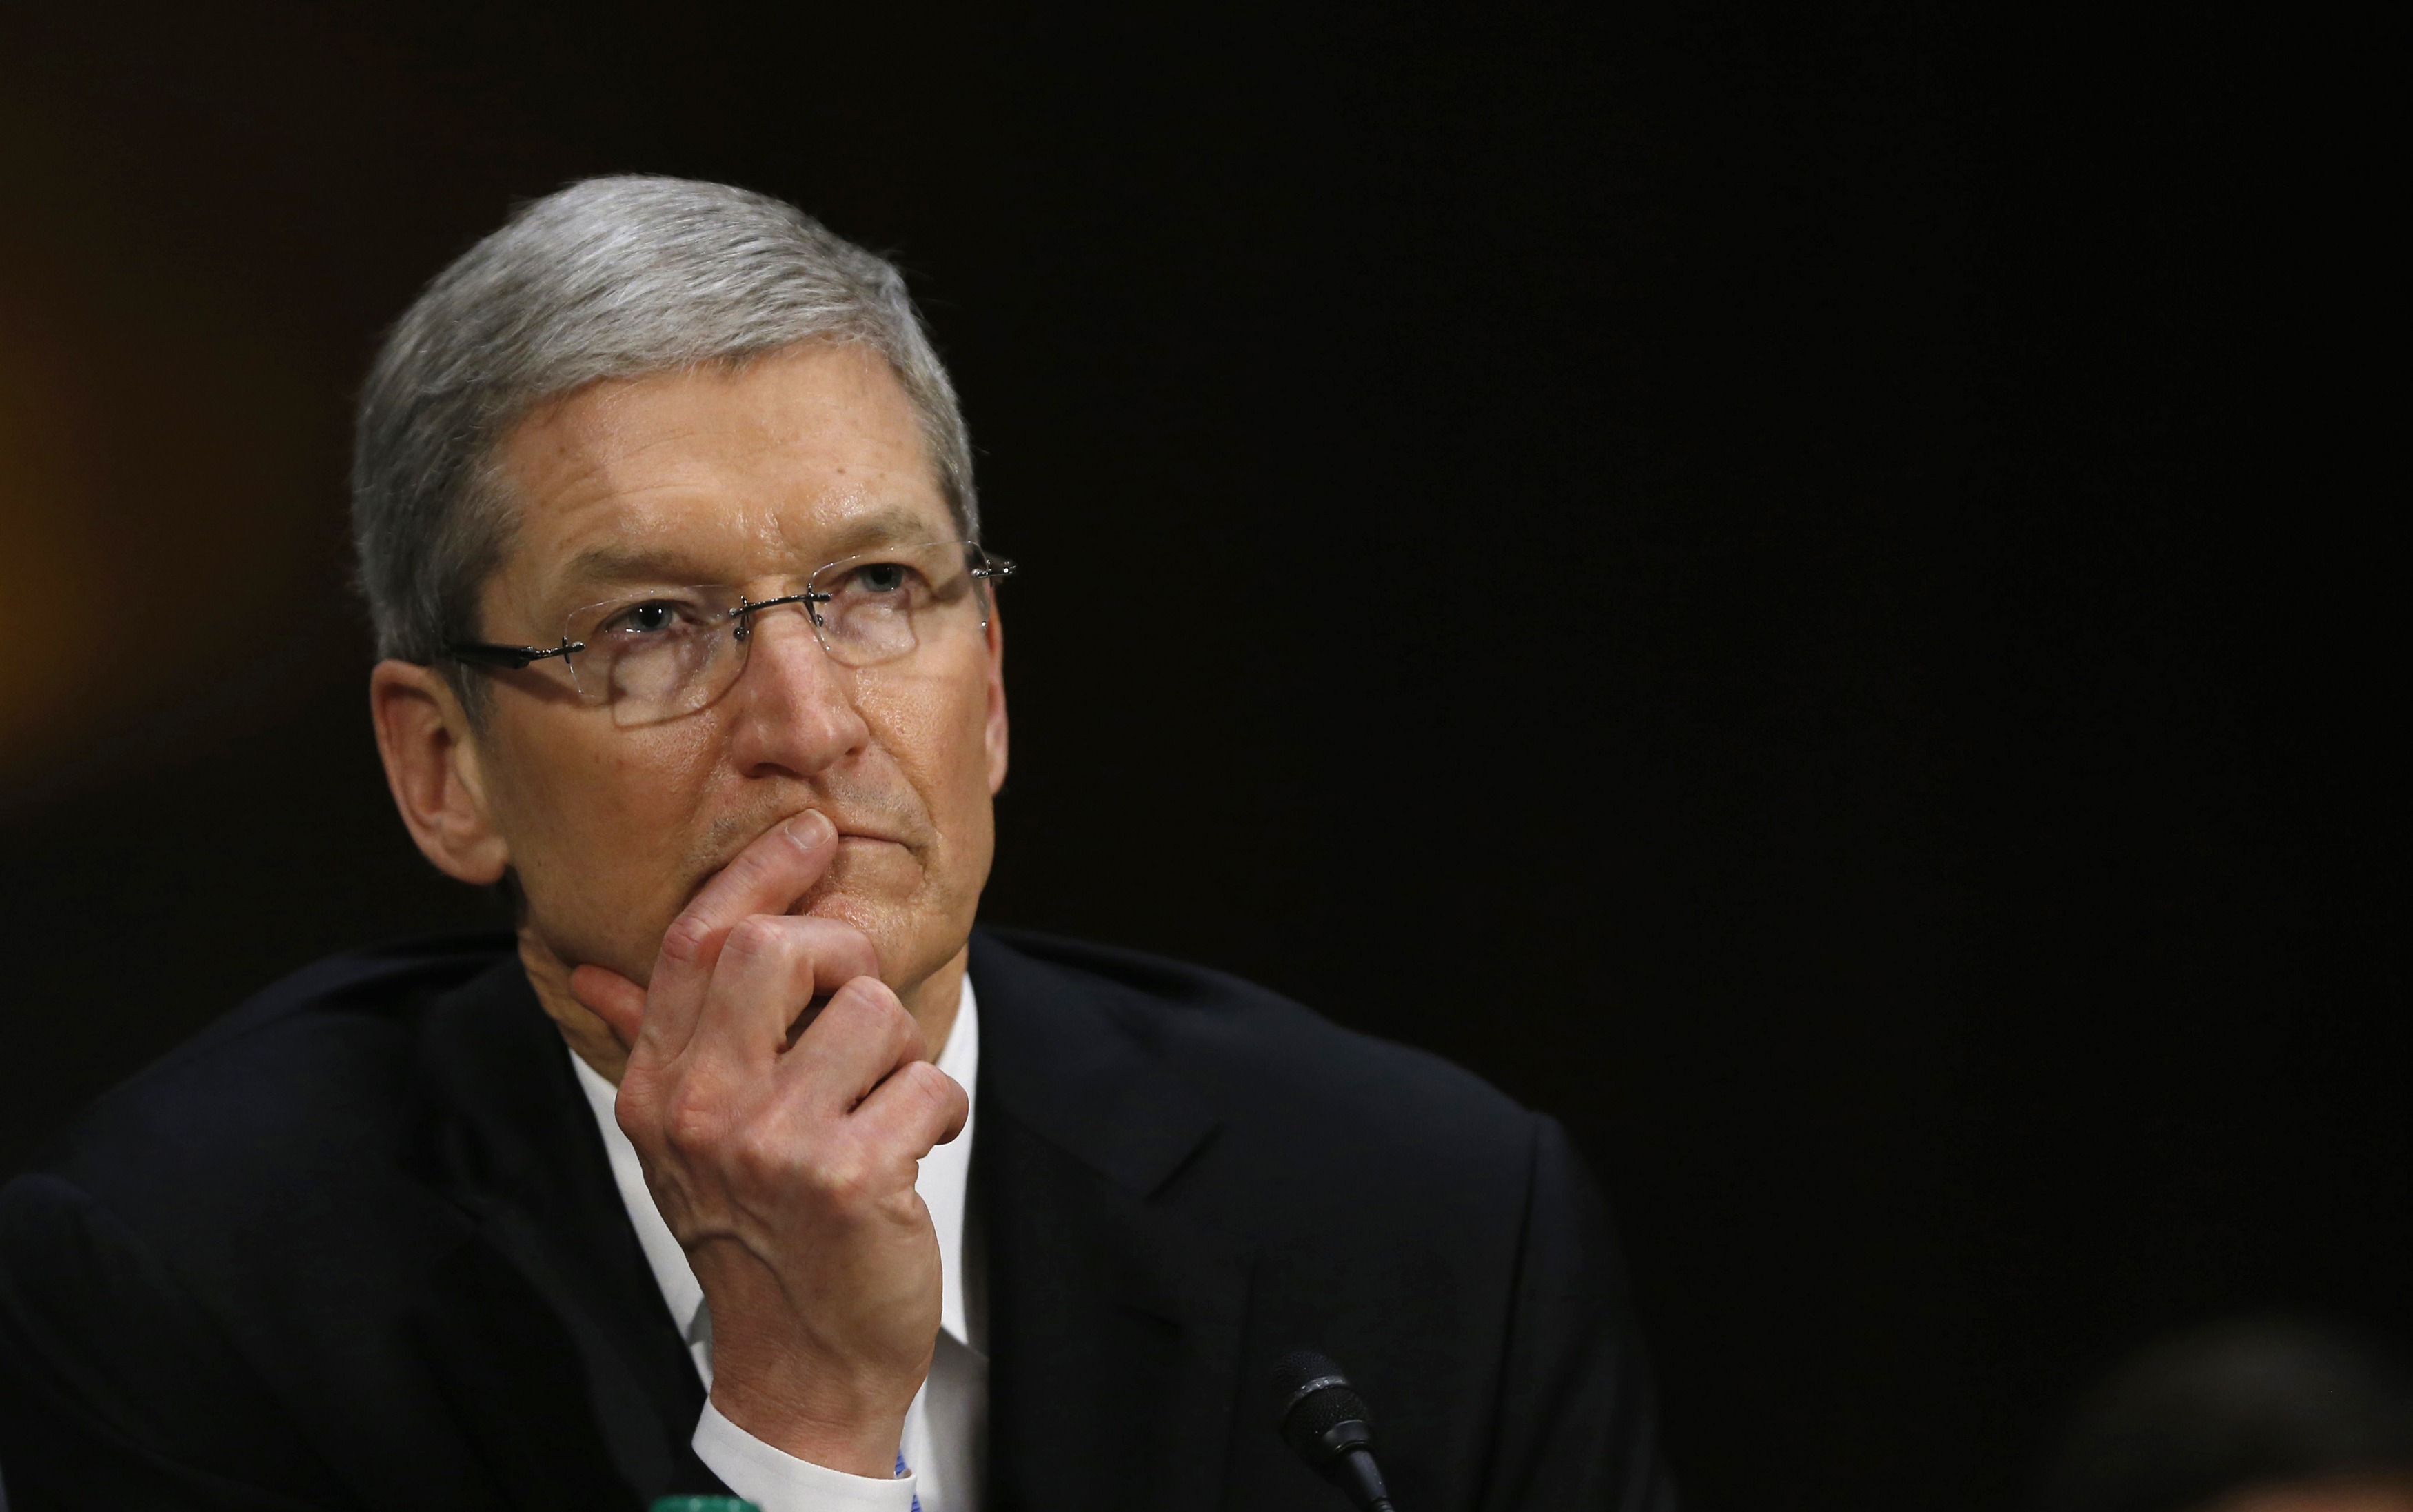 US says Apple led 'deliberate' scheme on ebooks